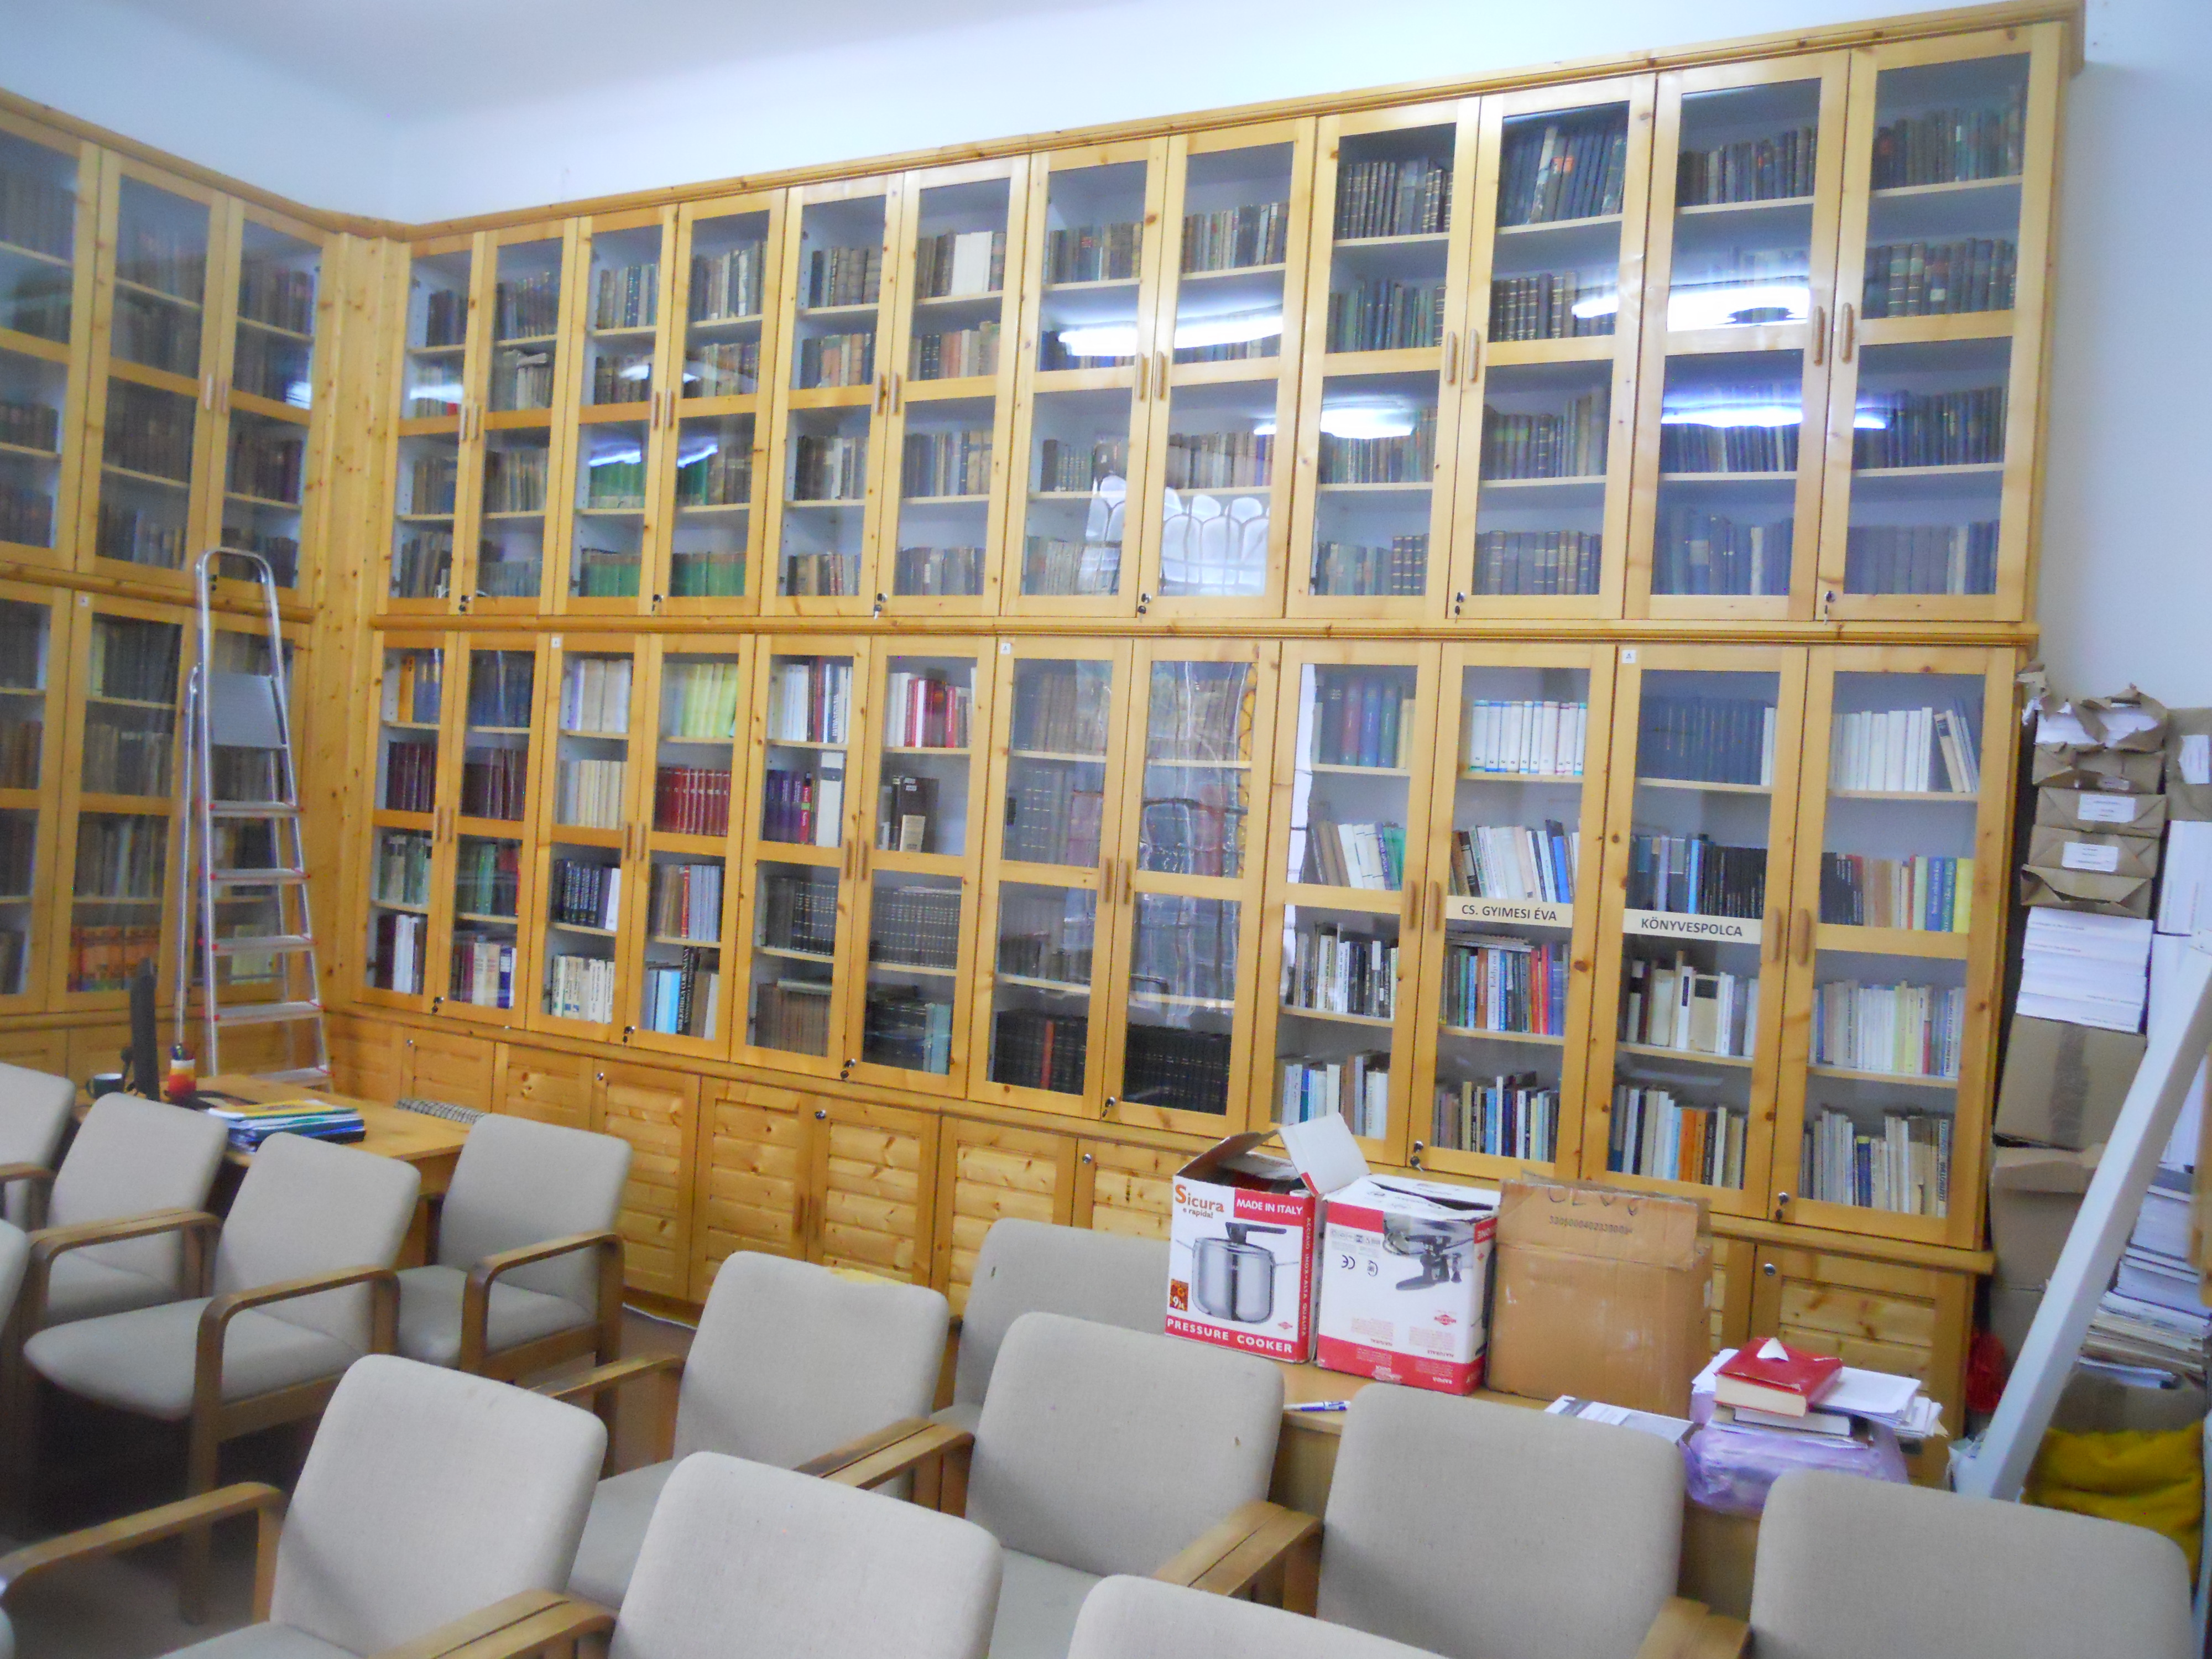 Colecția Éva Cseke-Gyimesi de la BCU Cluj-Napoca (Biblioteca Institutului pentru Literatură Maghiară)